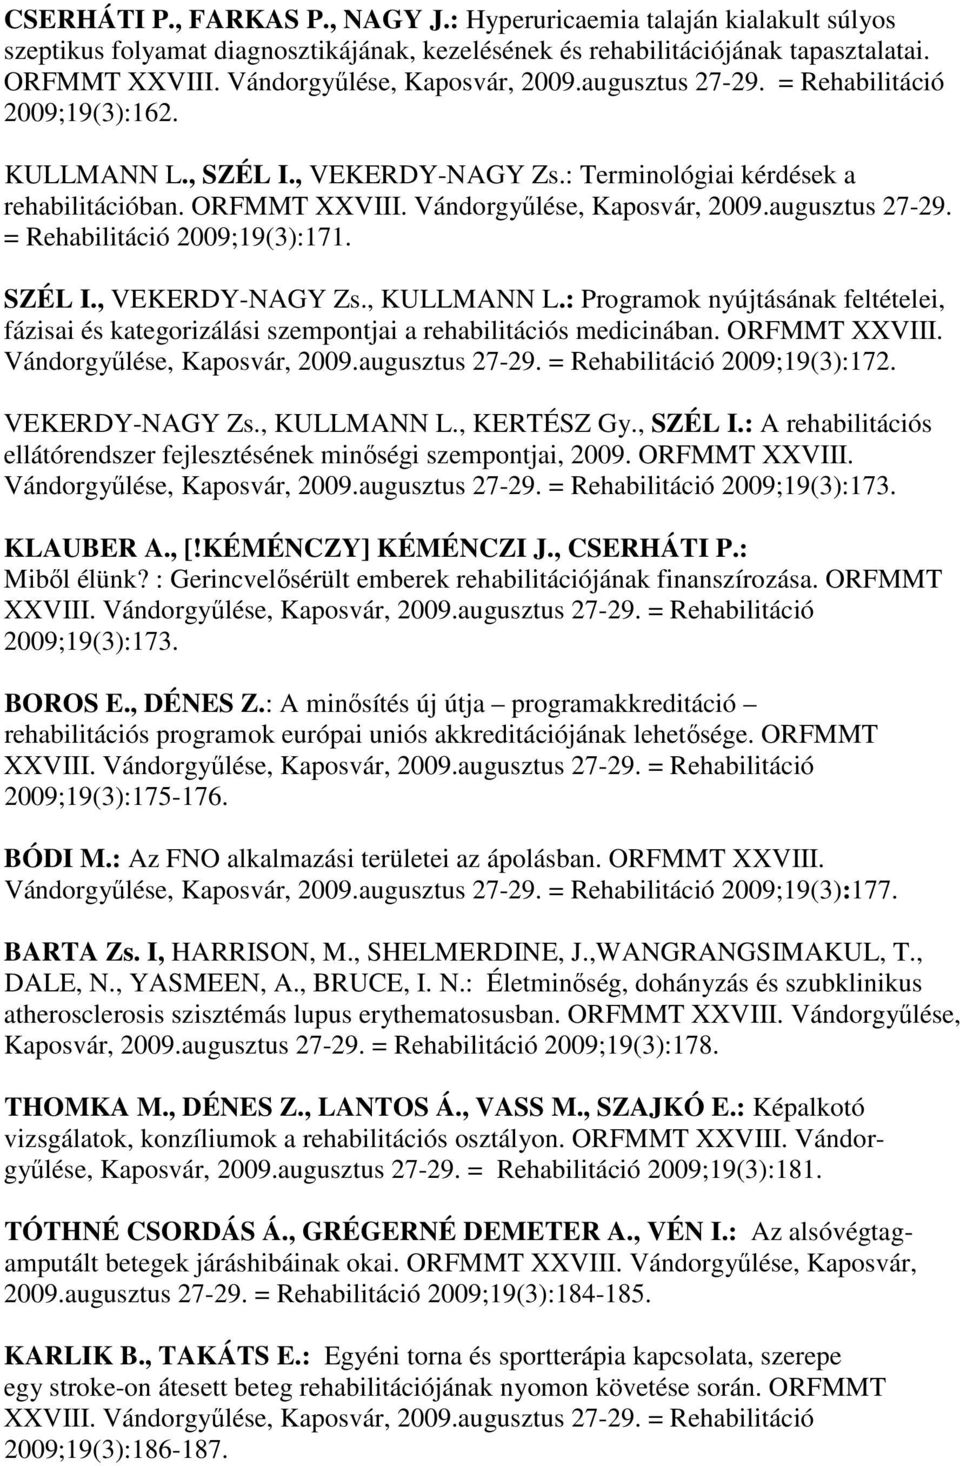 : Programok nyújtásának feltételei, fázisai és kategorizálási szempontjai a rehabilitációs medicinában. ORFMMT XXVIII. Vándorgyűlése, Kaposvár, 2009.augusztus 27-29. = Rehabilitáció 2009;19(3):172.